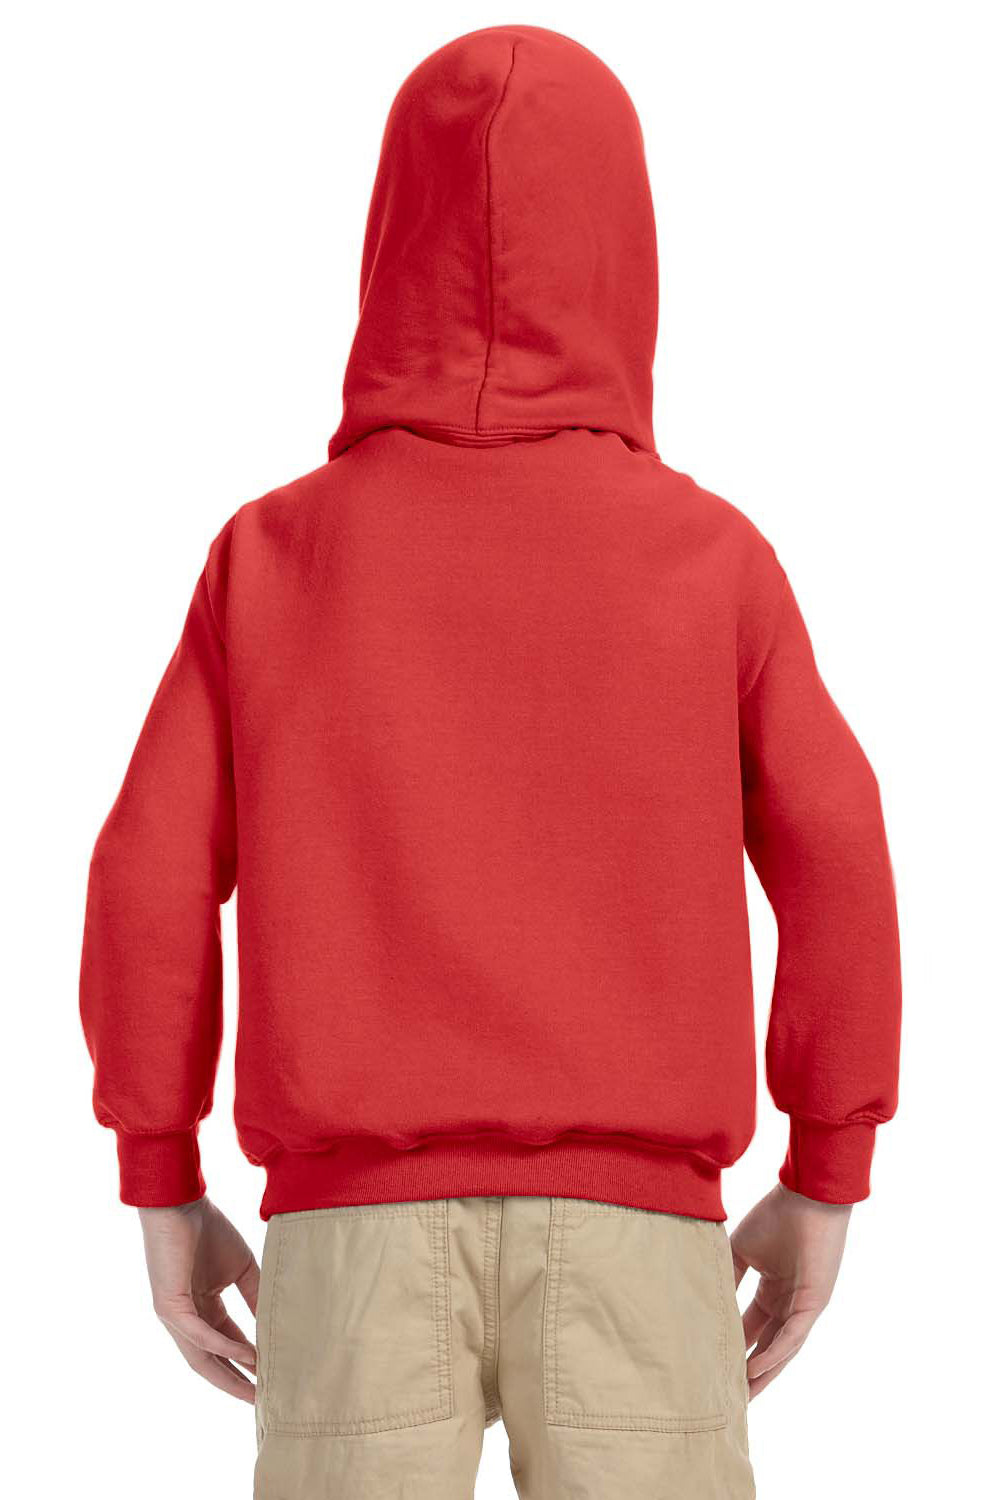 Gildan G185B Youth Hooded Sweatshirt Hoodie Red Back